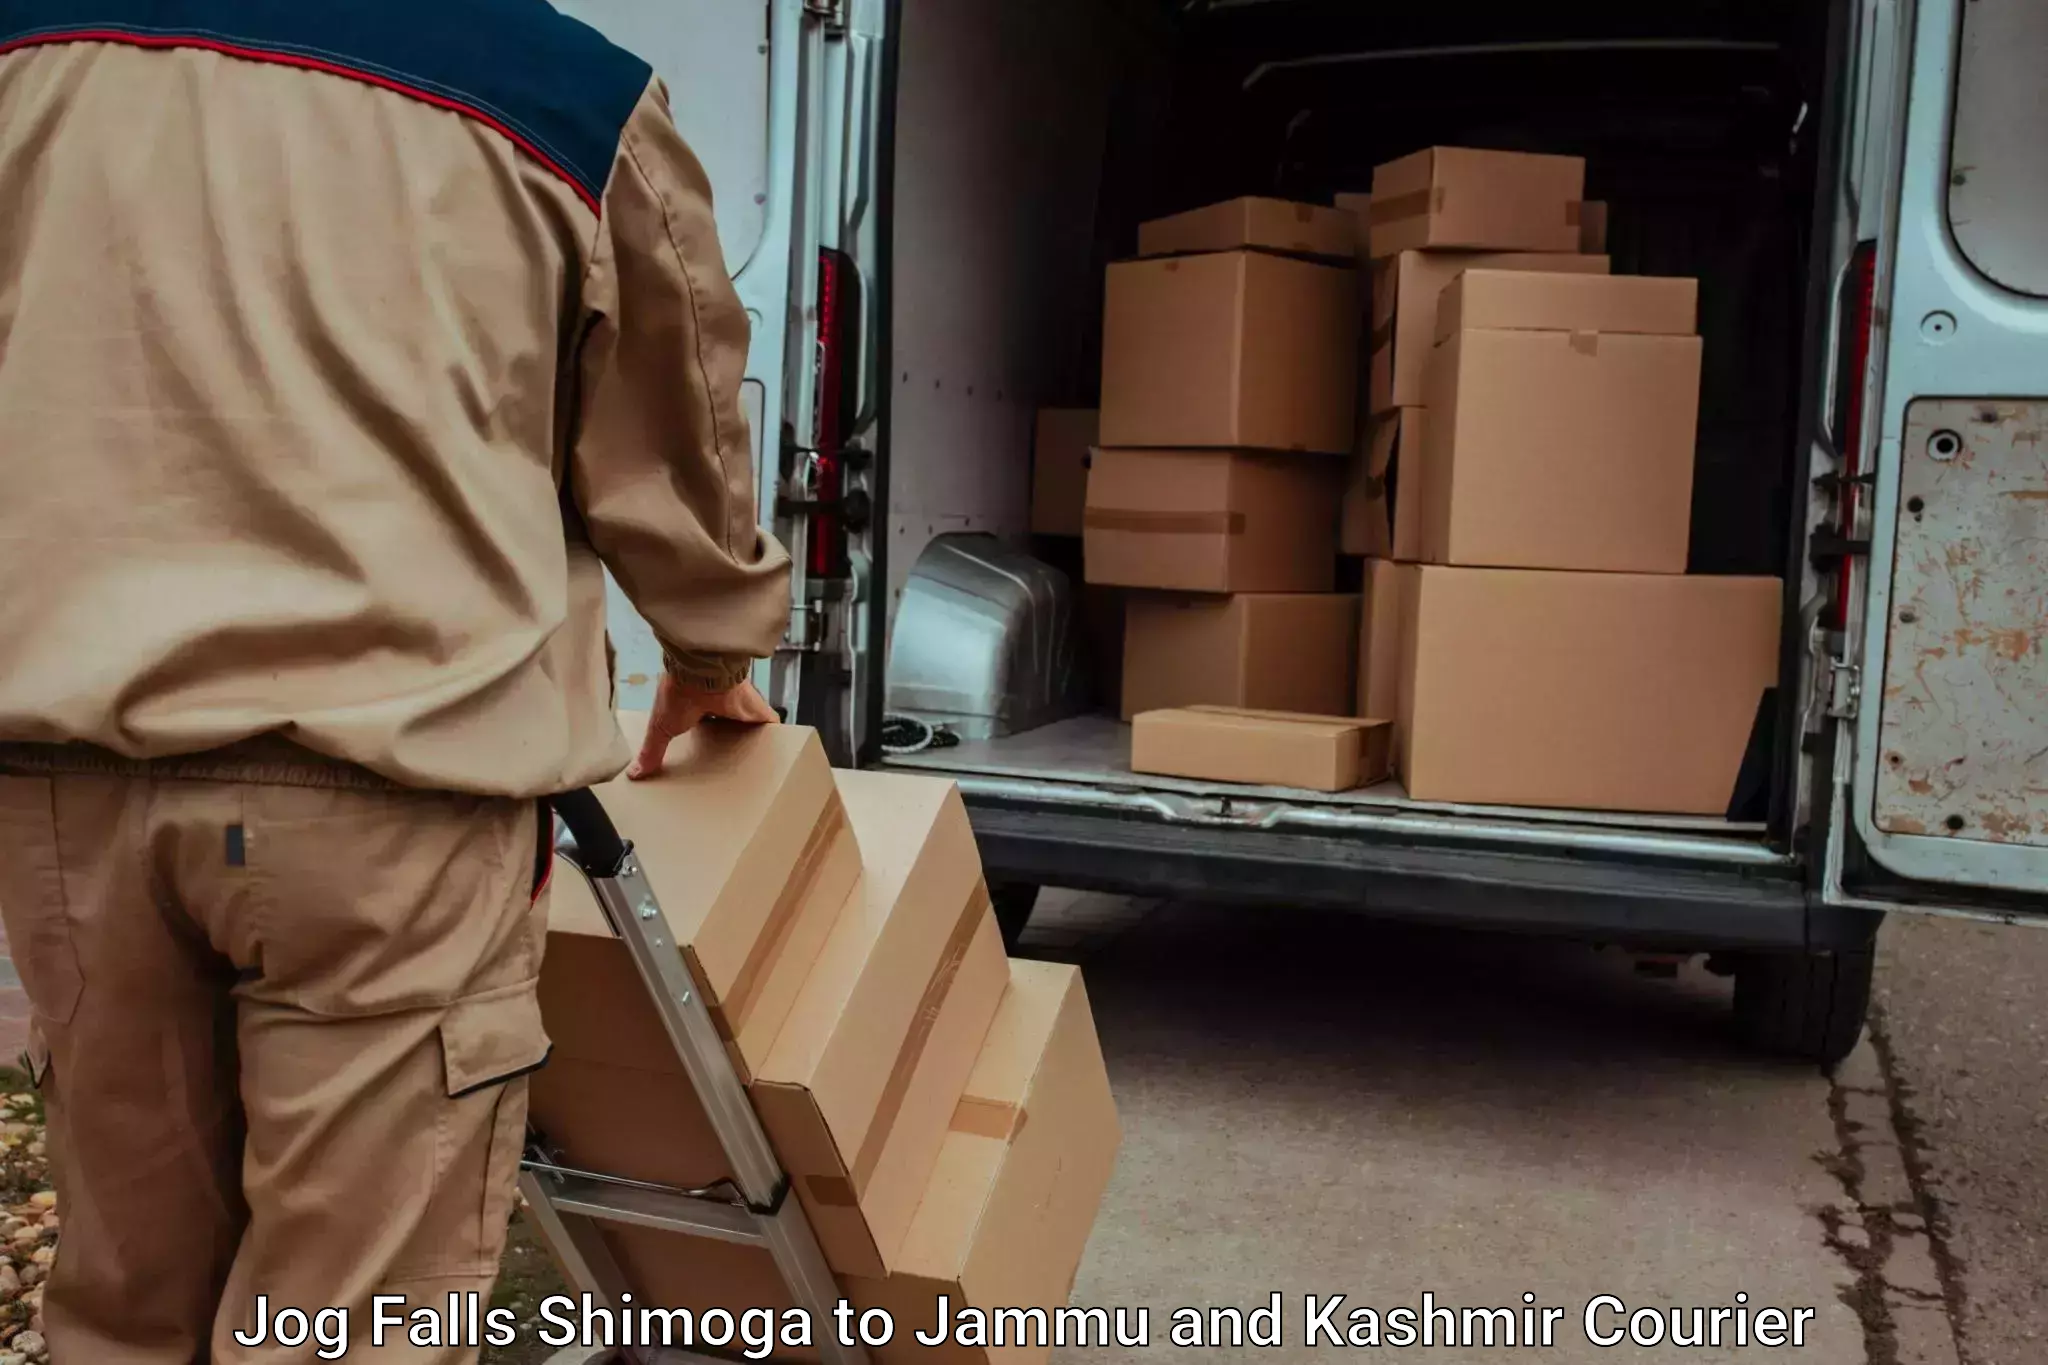 Electronic items luggage shipping Jog Falls Shimoga to Rajouri